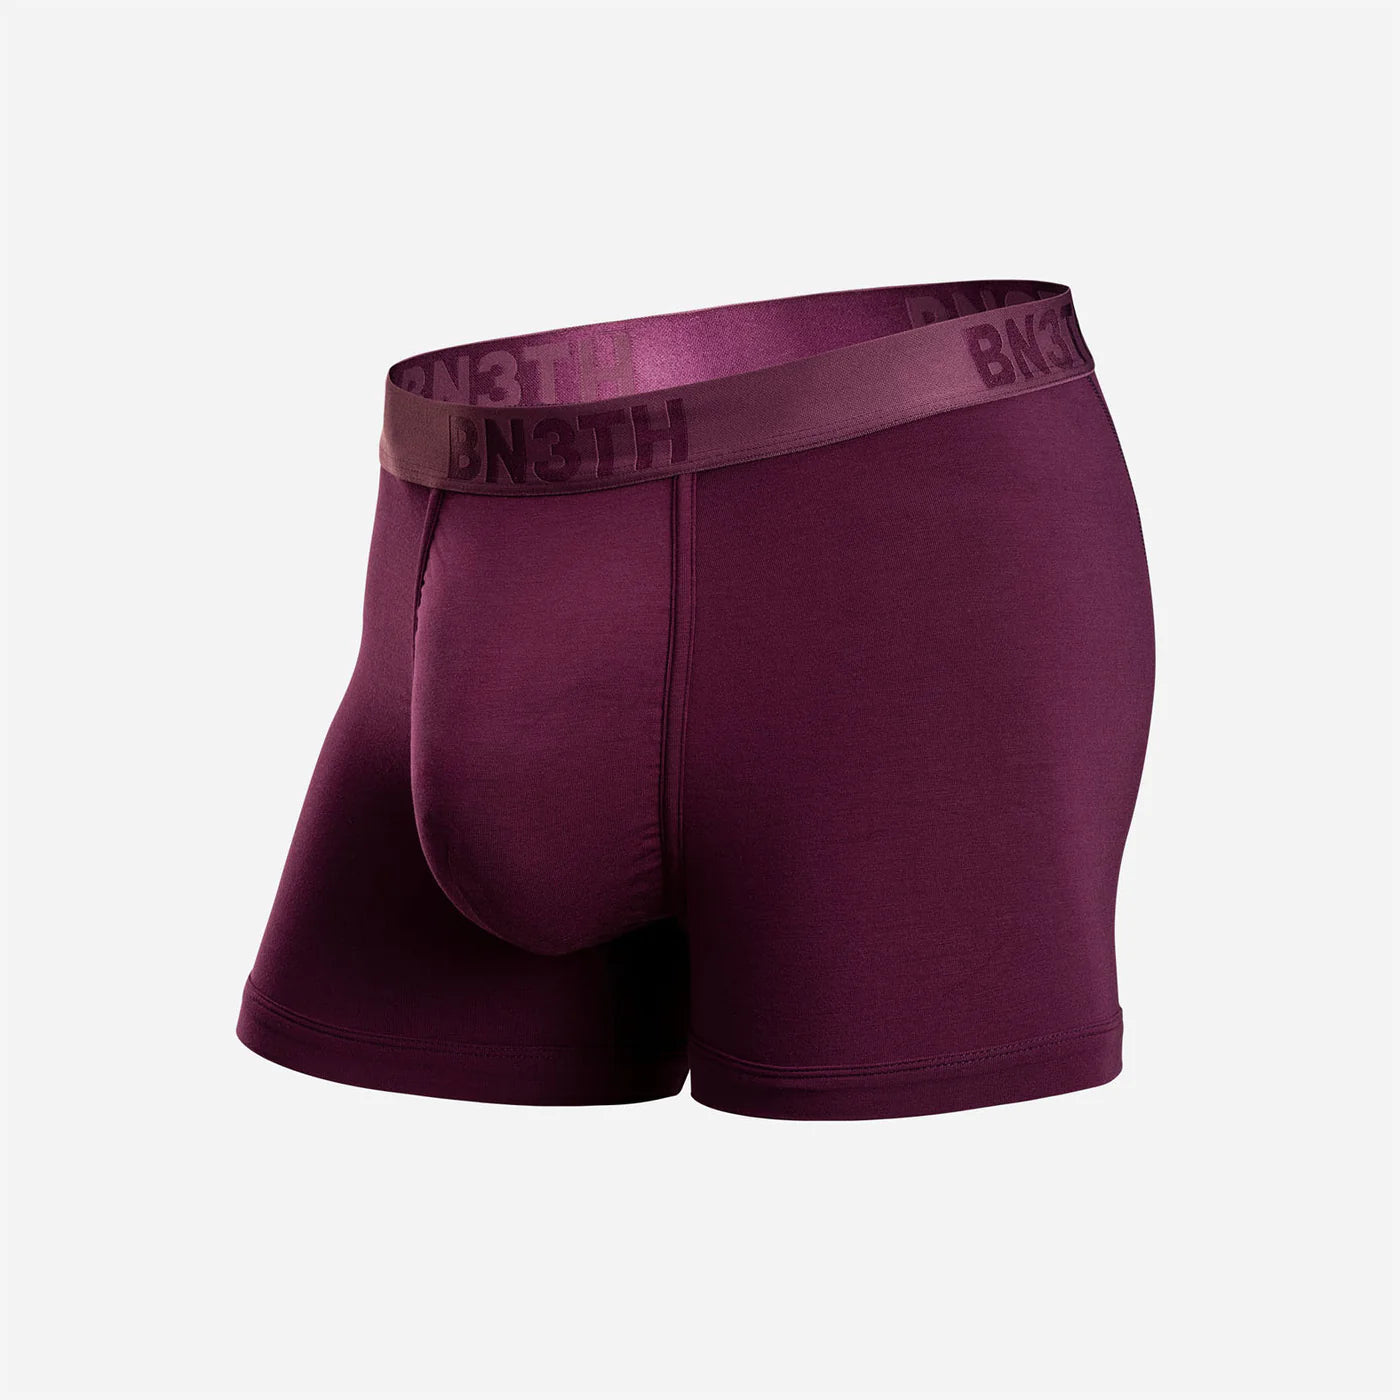 Classic Cut Trunk 3.5” Cabernet Solid Underwear